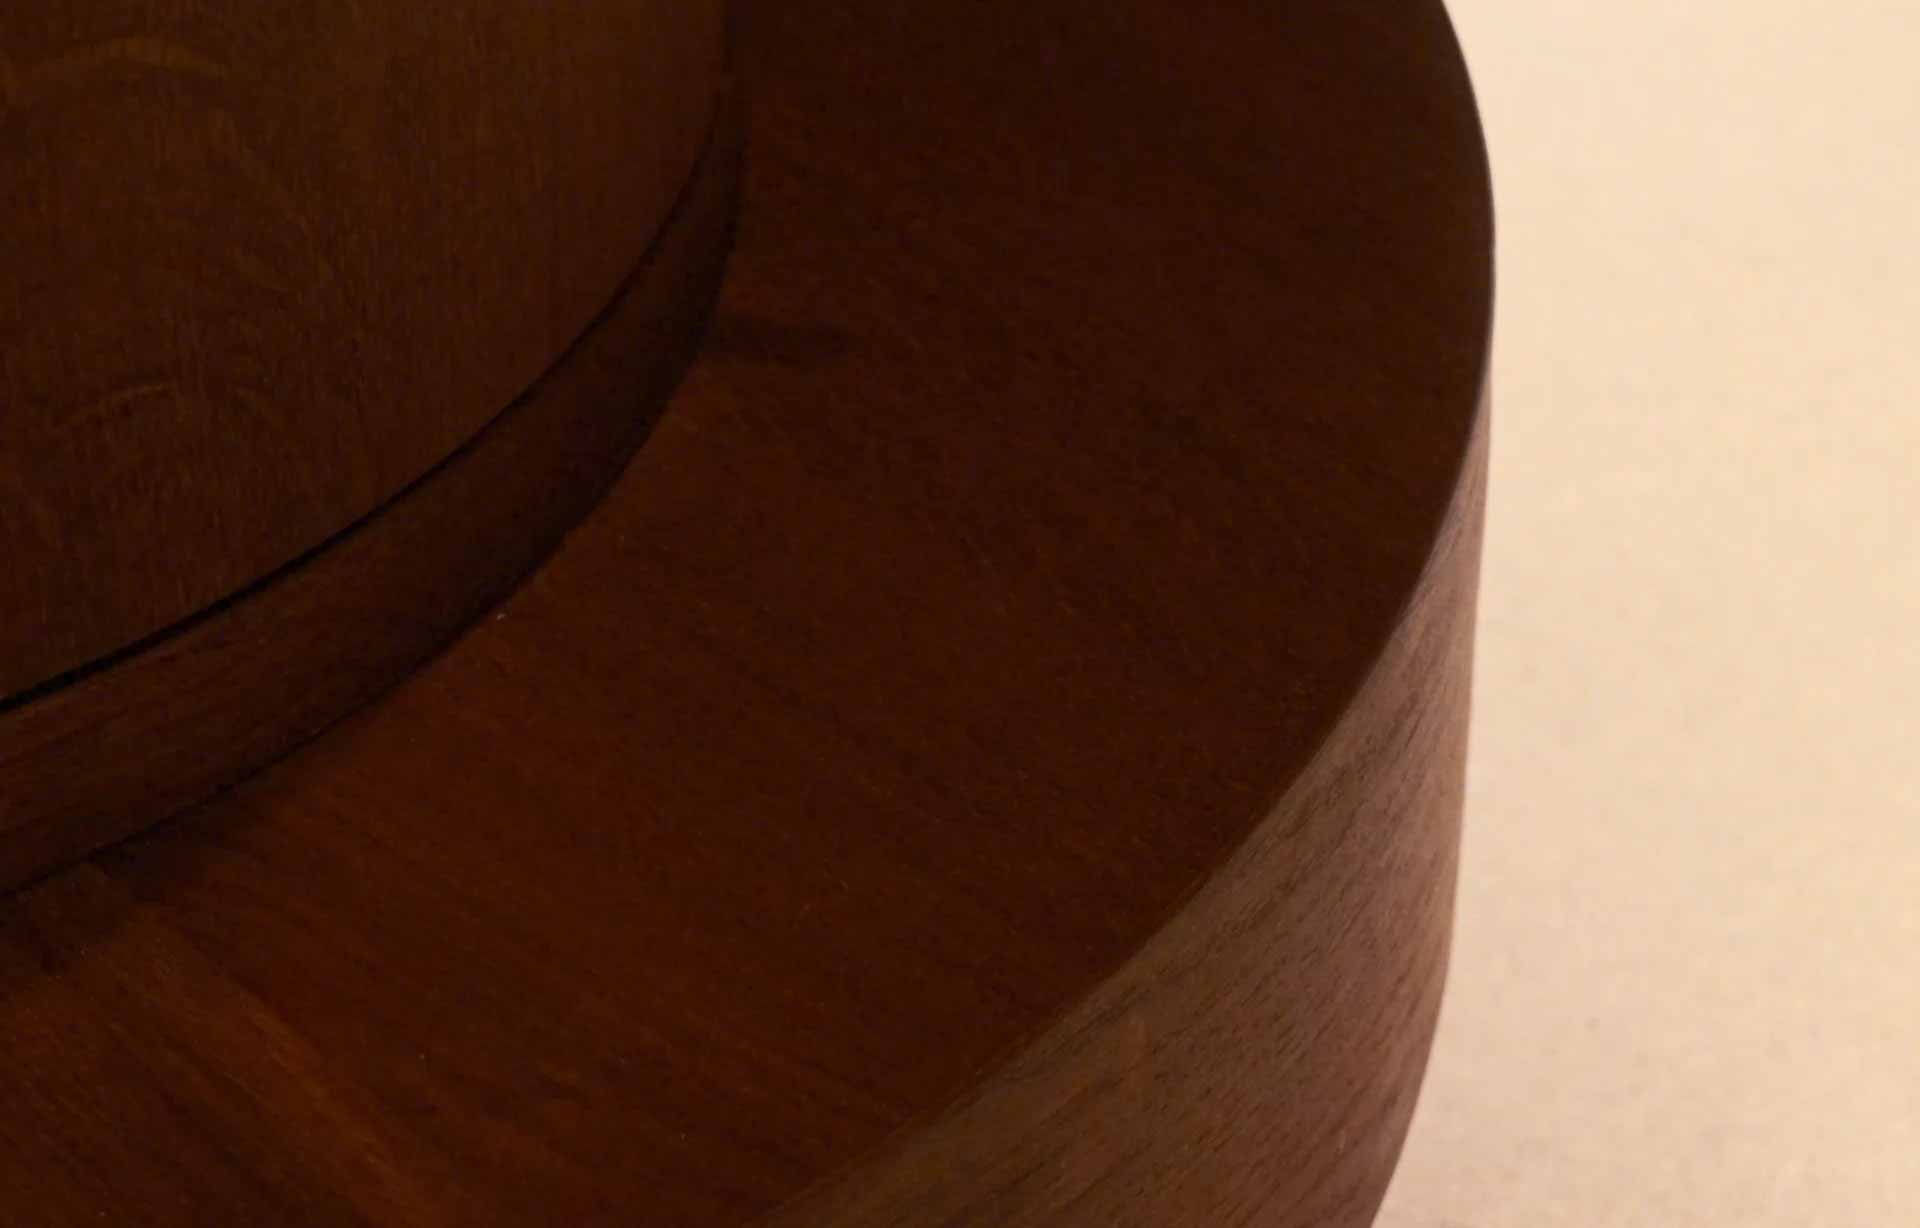 a round wooden sculpture